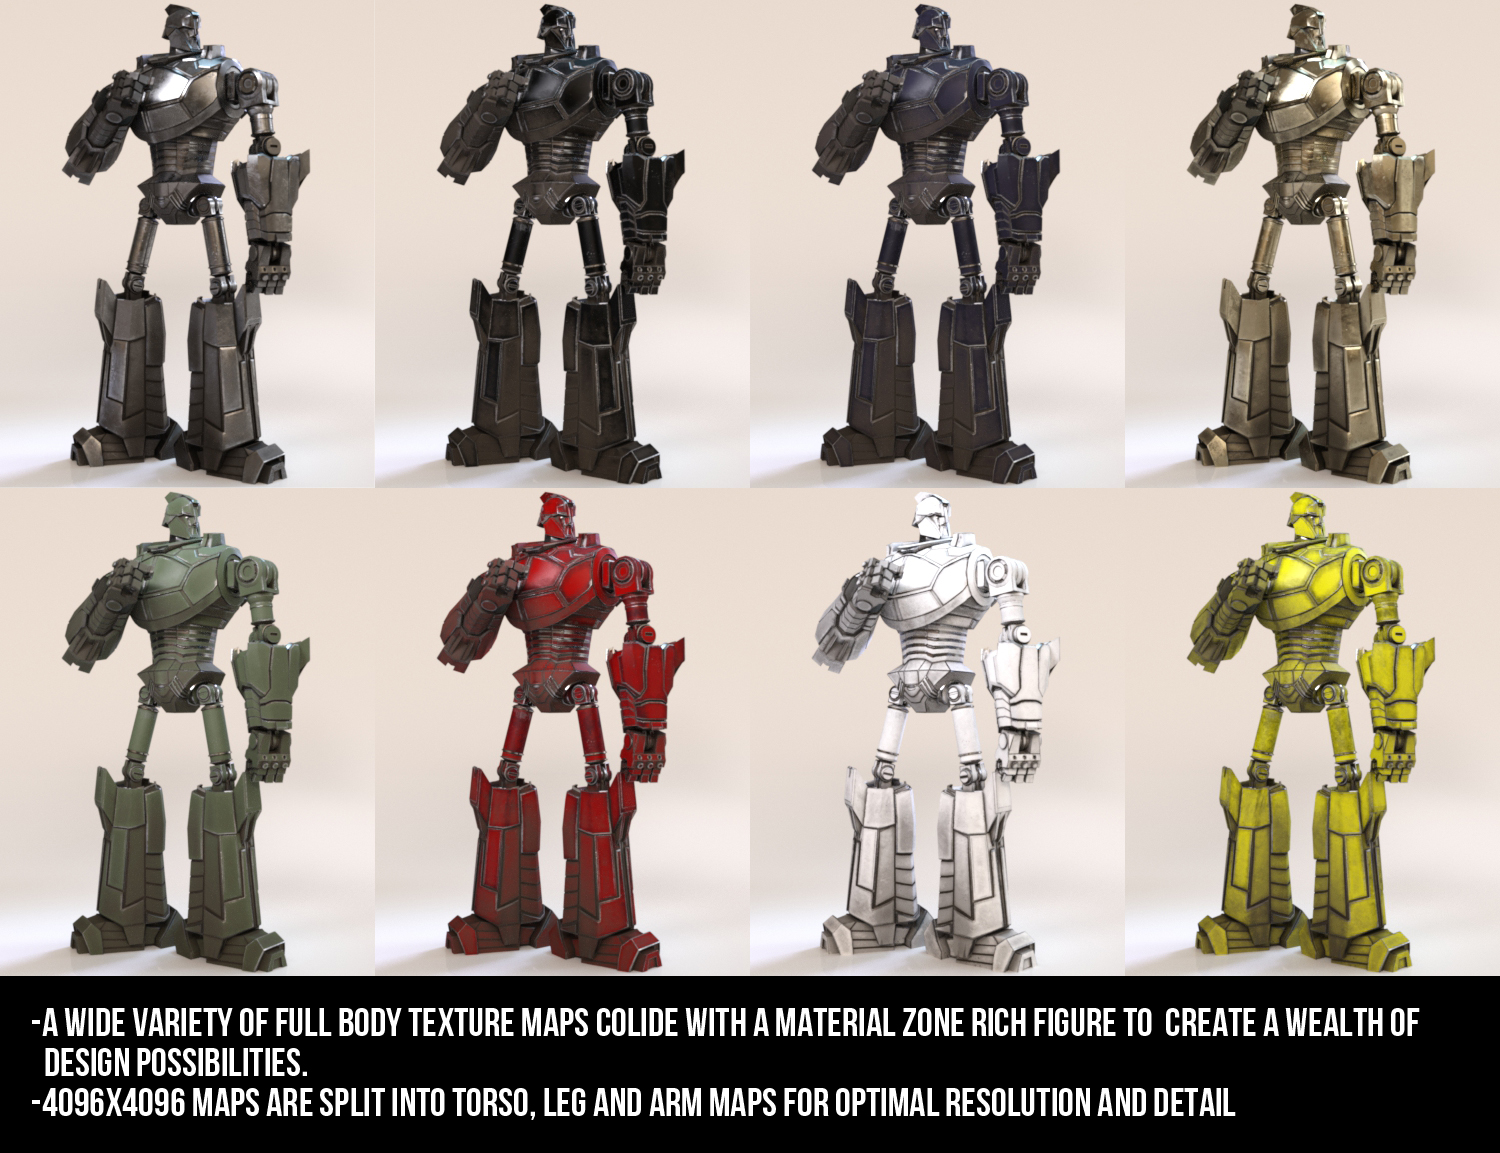 Great Greymalkin Robot by: JoeQuick, 3D Models by Daz 3D